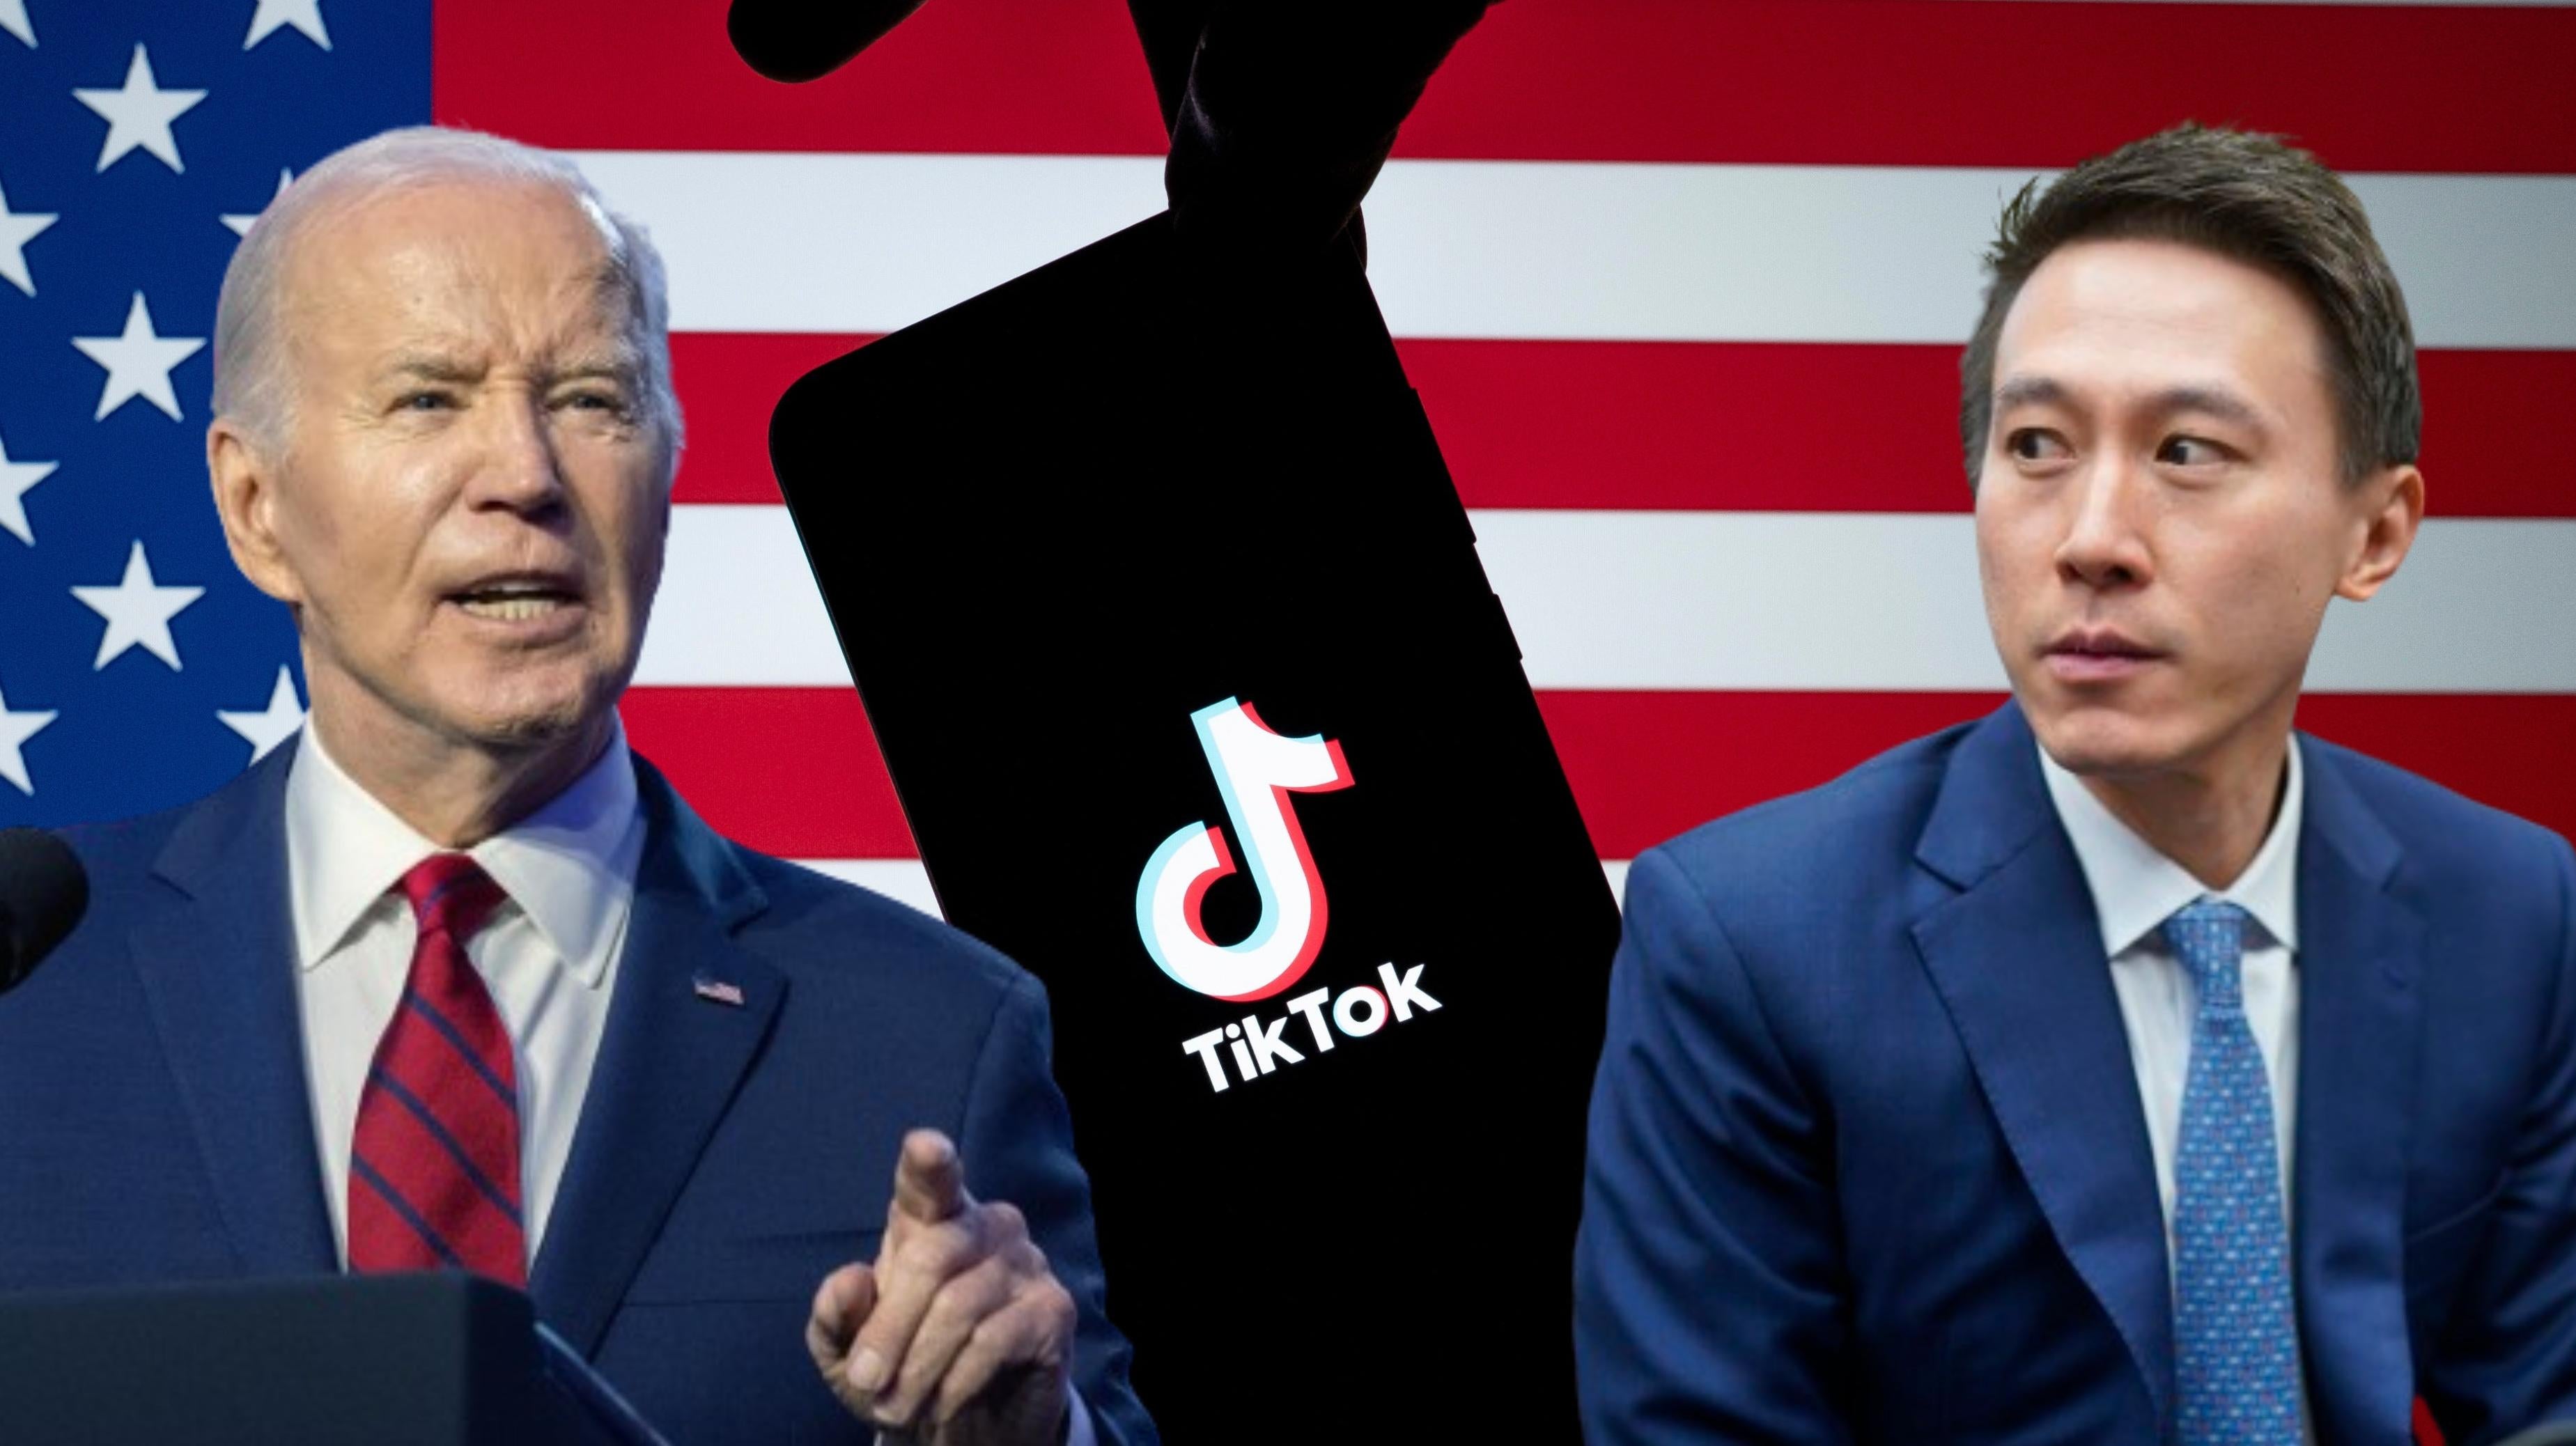 Борьба, продажа или закрытие: что будет с TikTok дальше?